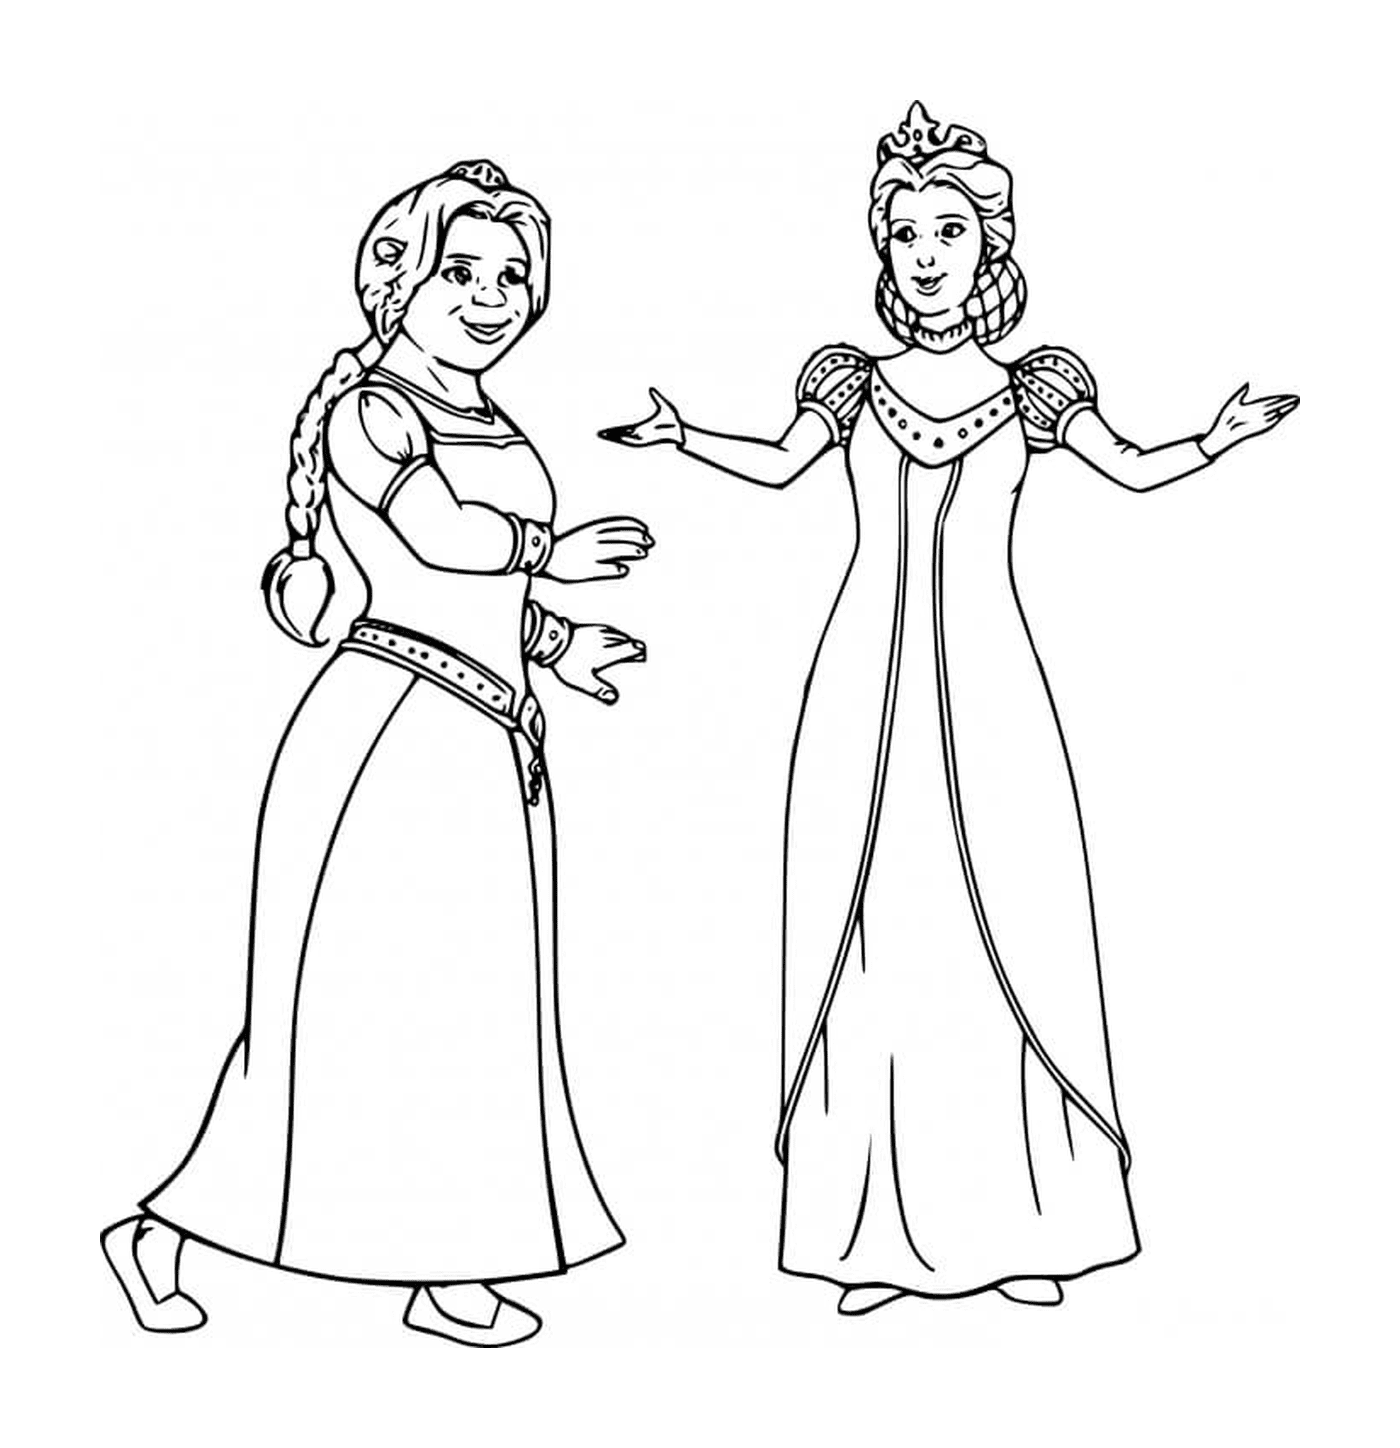  Zwei Frauen in einem mittelalterlichen Kleid 